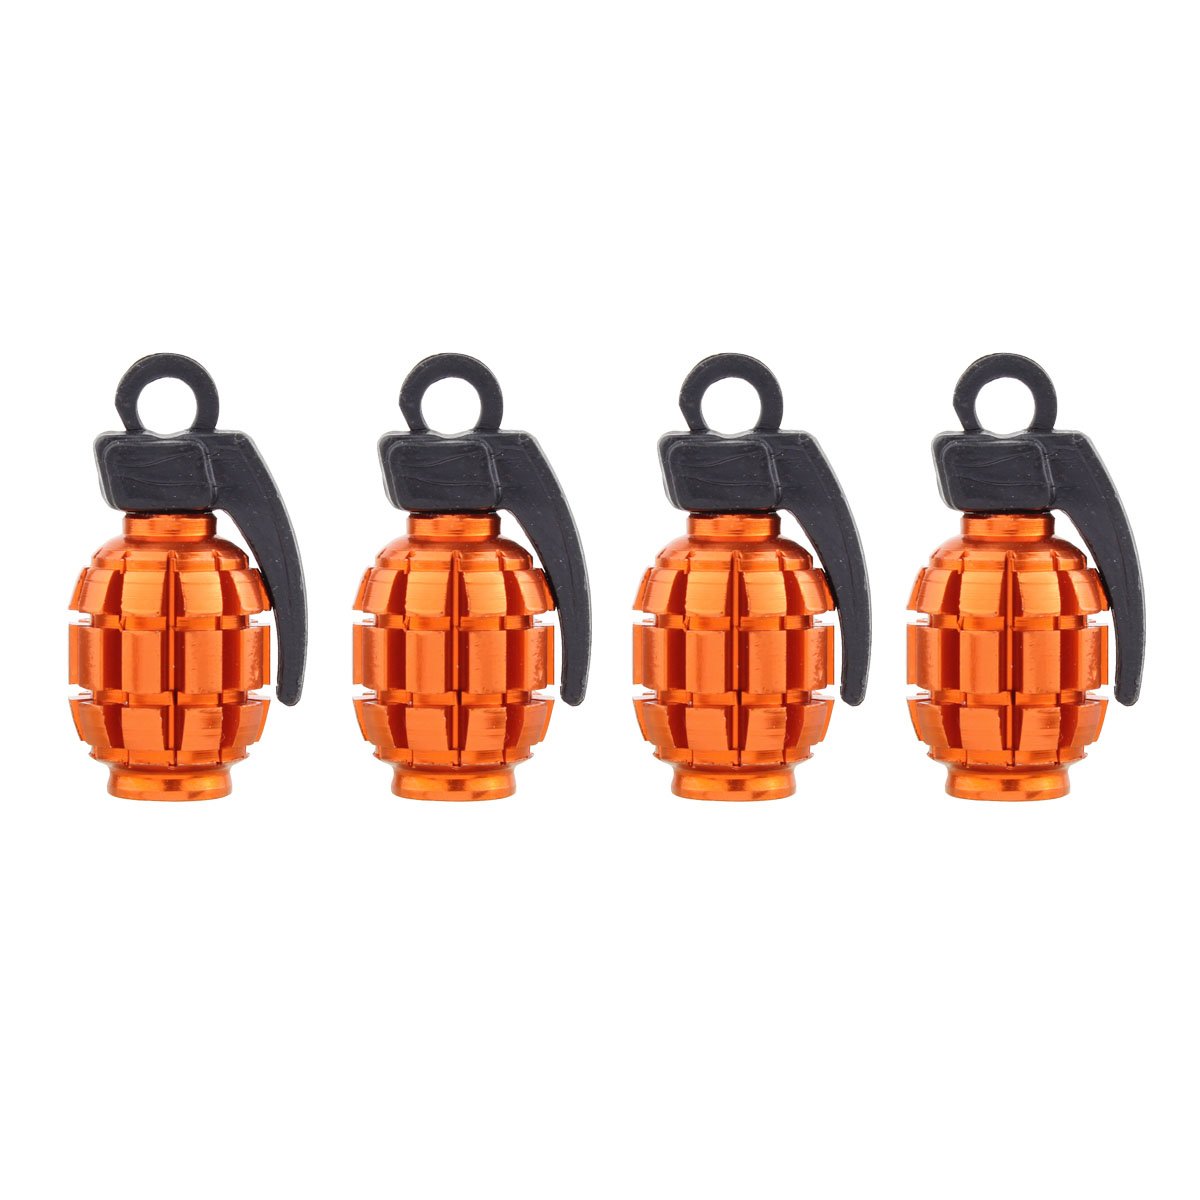 TOMALL Grenade Aluminiumlegierung Räder Reifen Ventilkappen für Universal Auto Moto (4 stücke Orange) von TOMALL